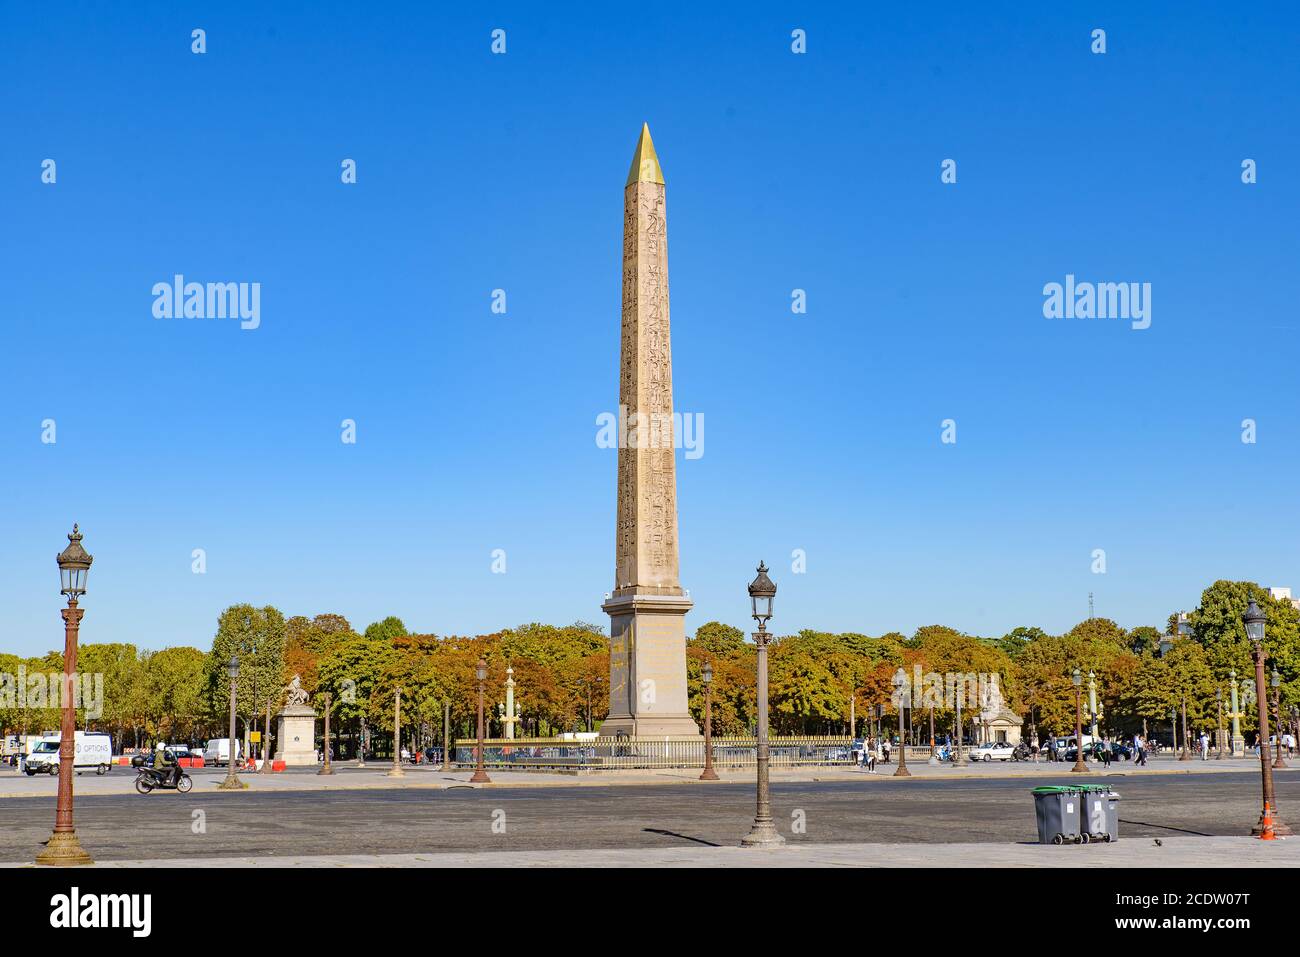 Place de la Concorde, the largest public square in Paris, France Stock Photo